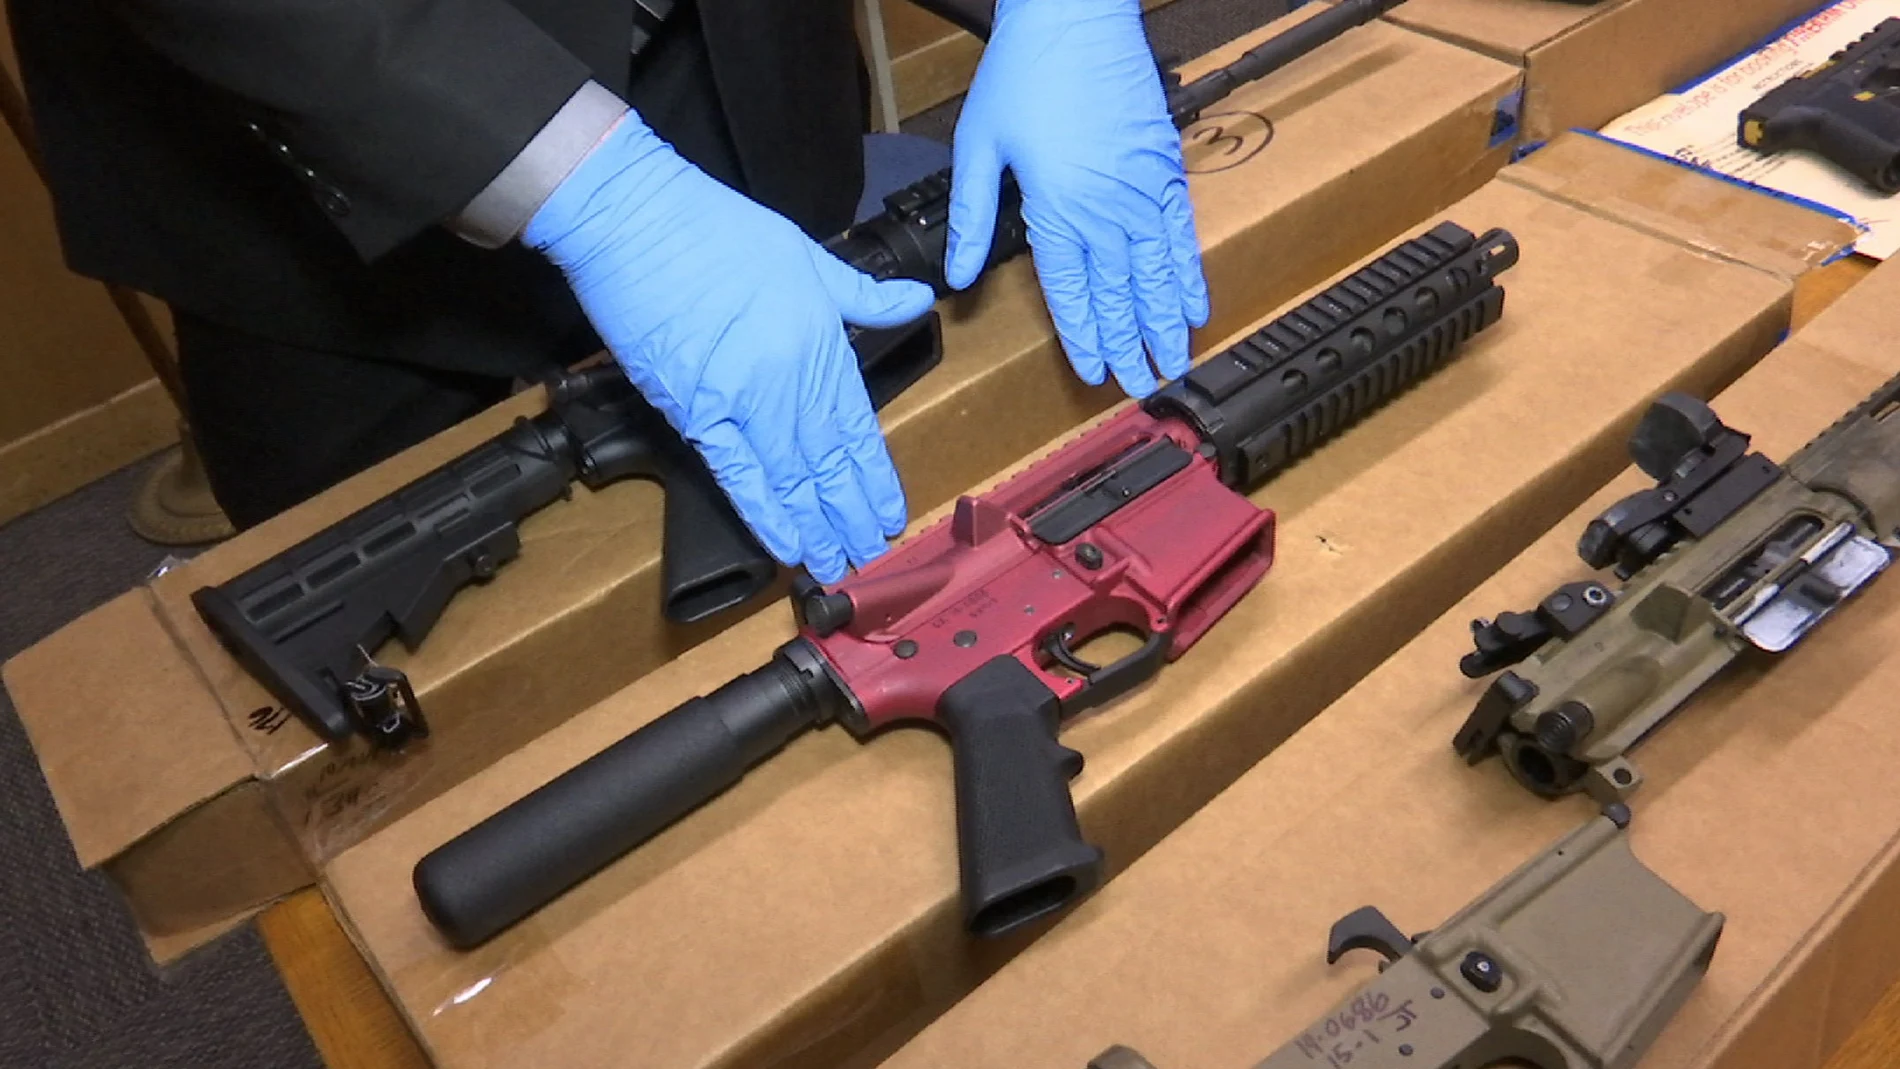 Las ‘ghost guns’ están contribuyendo a un aumento de la violencia armada en EE UU